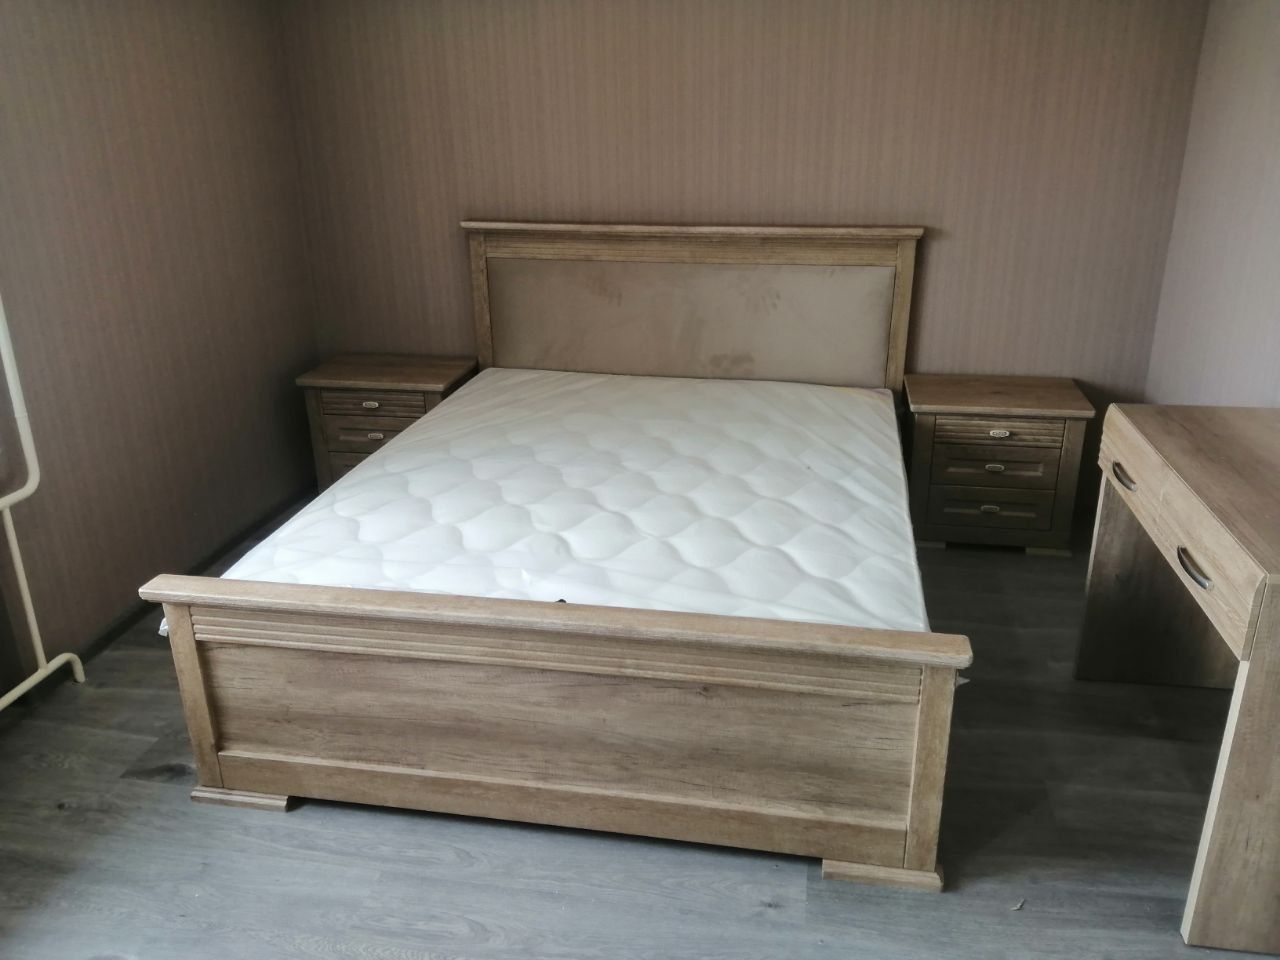 Двуспальная кровать "Верона" 160х200 с подъемным механизмом цвет бежевый изножье высокое